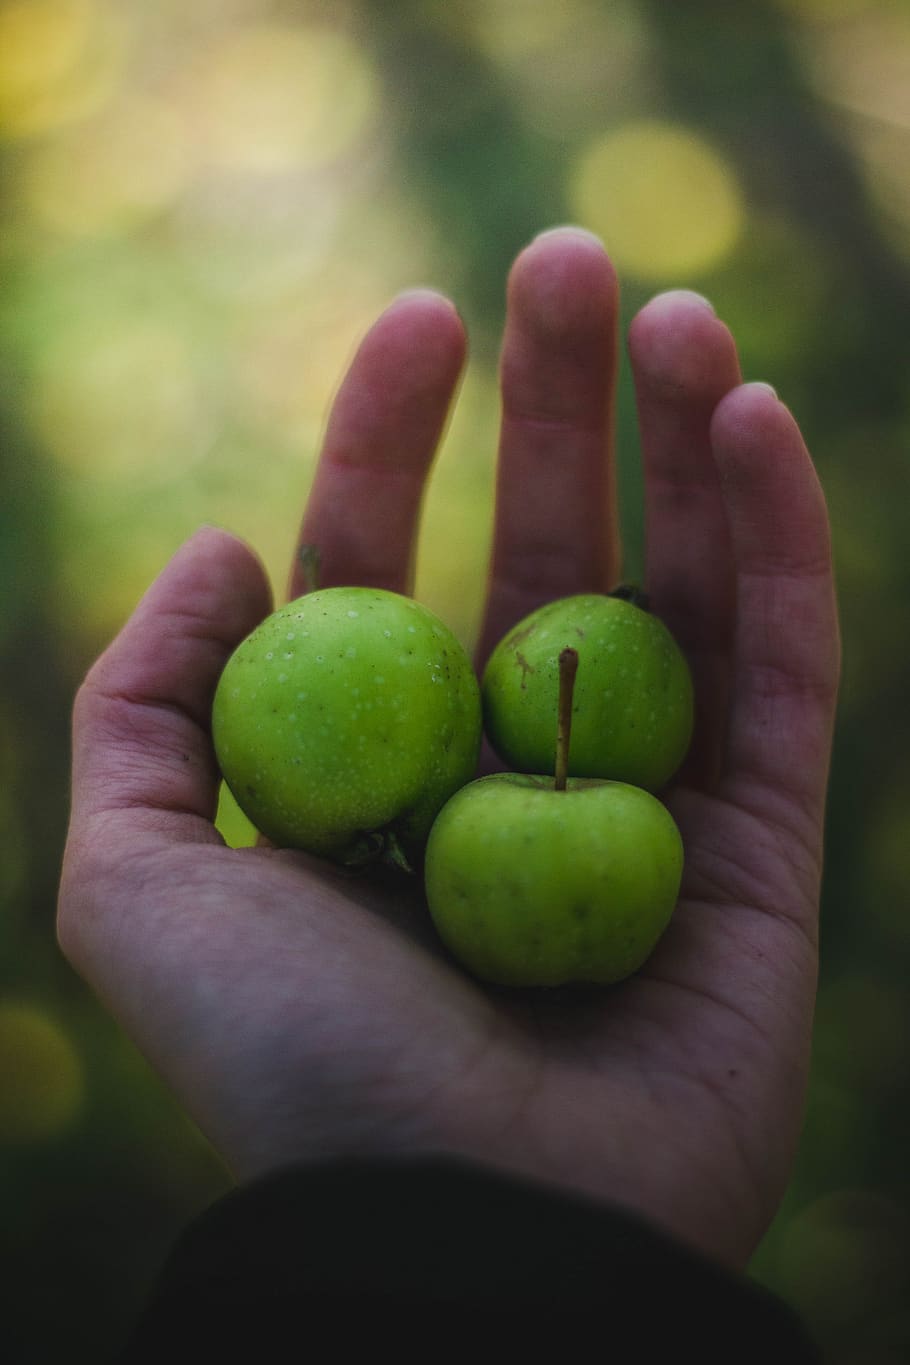 verde, maçã, fruta, suculento, comida, palma, mão, desfoque, mão humana, parte do corpo humano